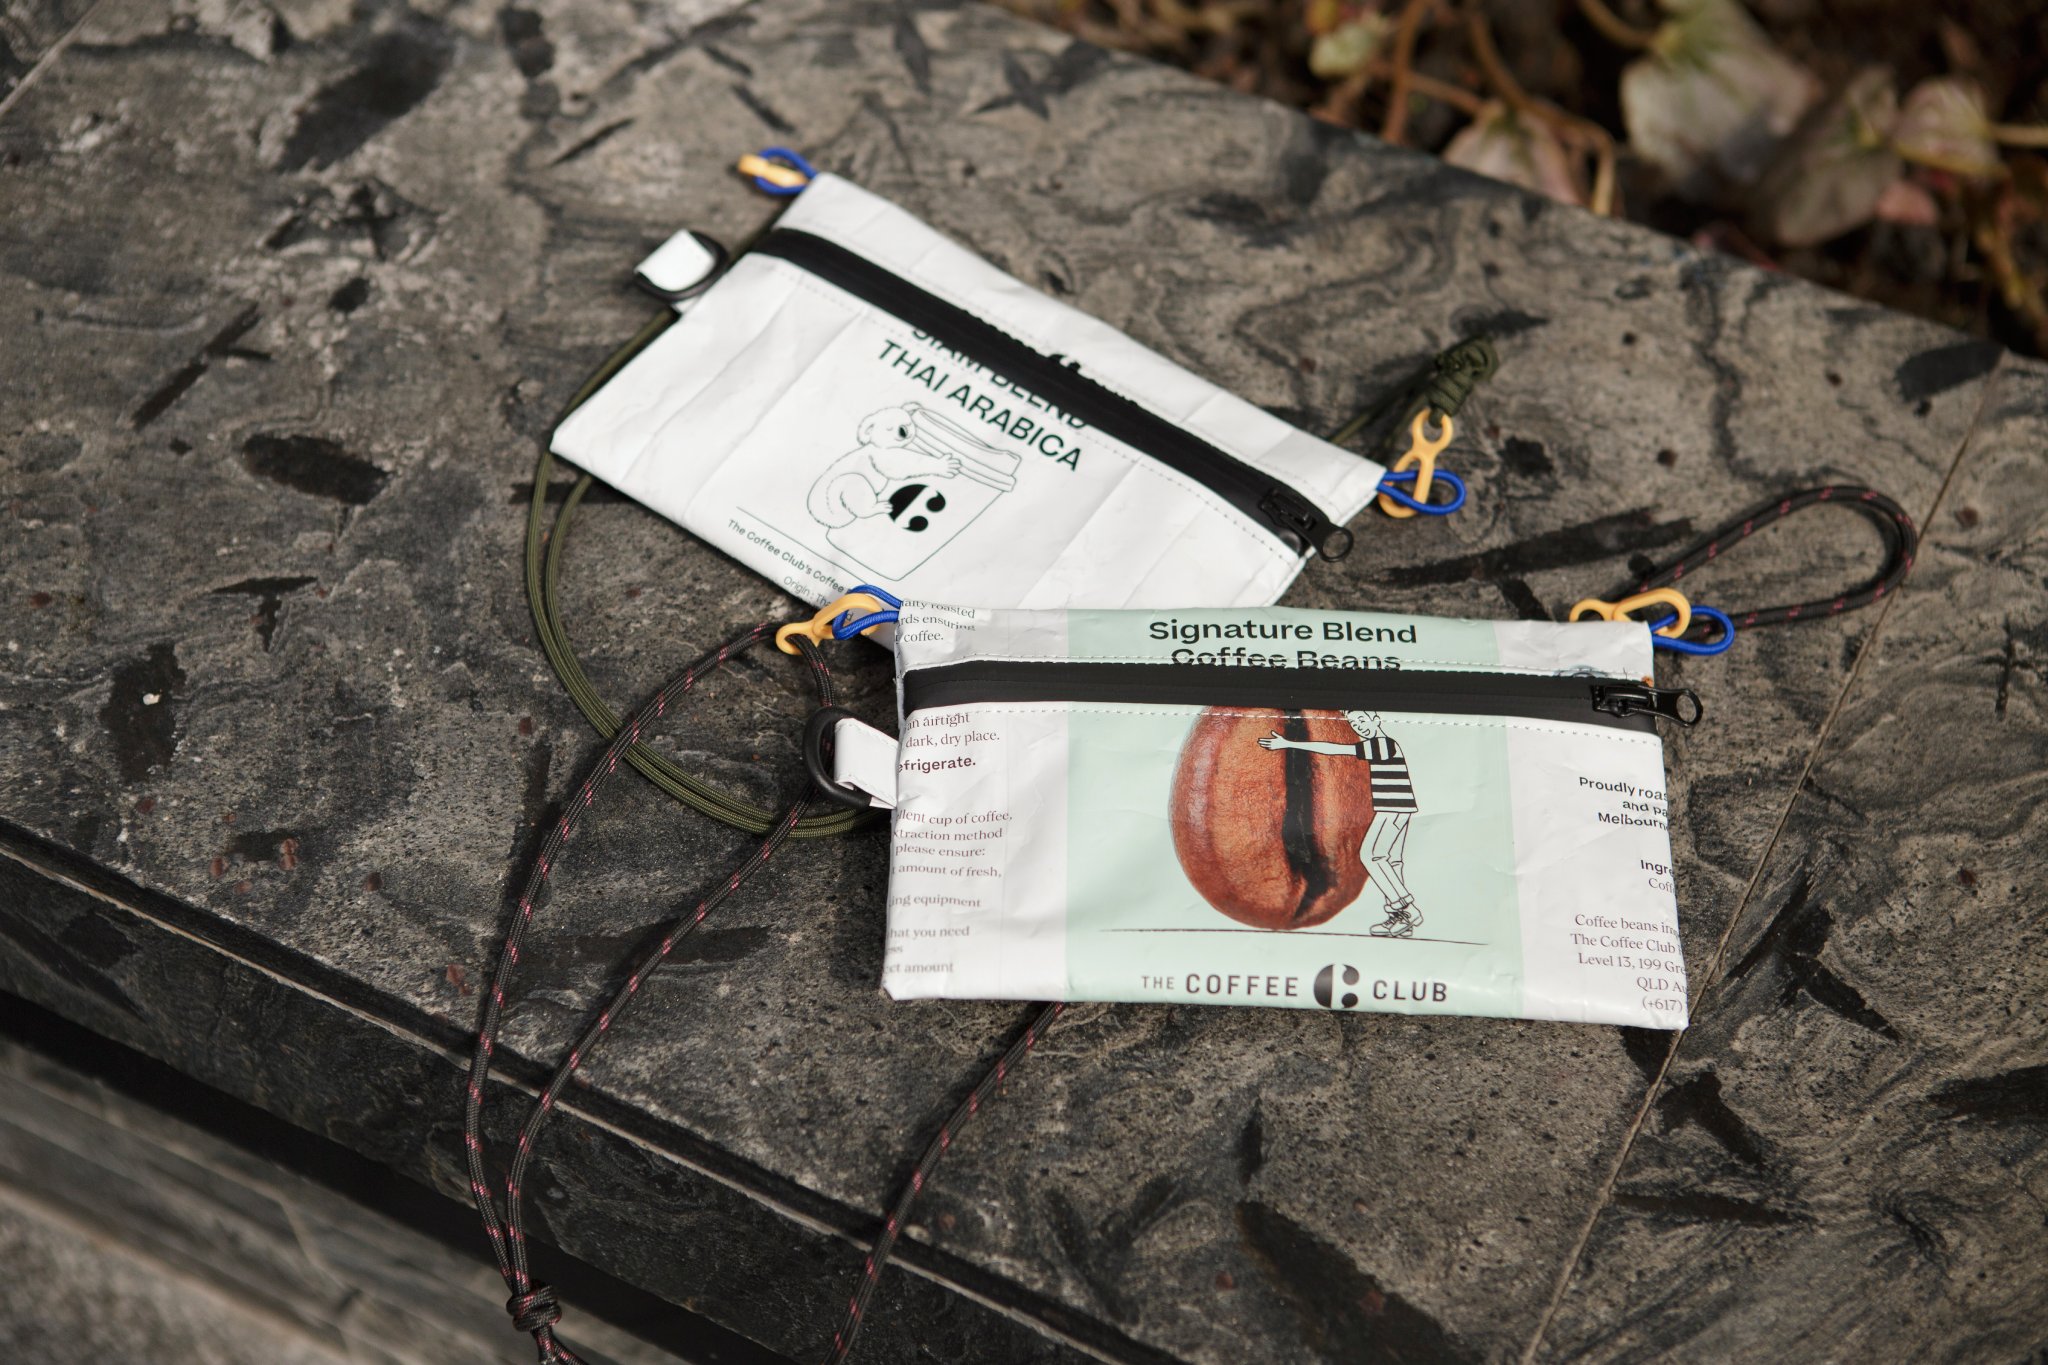 “เดอะ คอฟฟี่ คลับ” ต่อยอดไอเดียรักษ์โลก เปิดตัวกระเป๋า “ECO Coffee Bag”  เปลี่ยนถุงเมล็ดกาแฟสู่ผลงานลิมิเต็ด พร้อมเปิดพรีออเดอร์จำนวนจำกัด